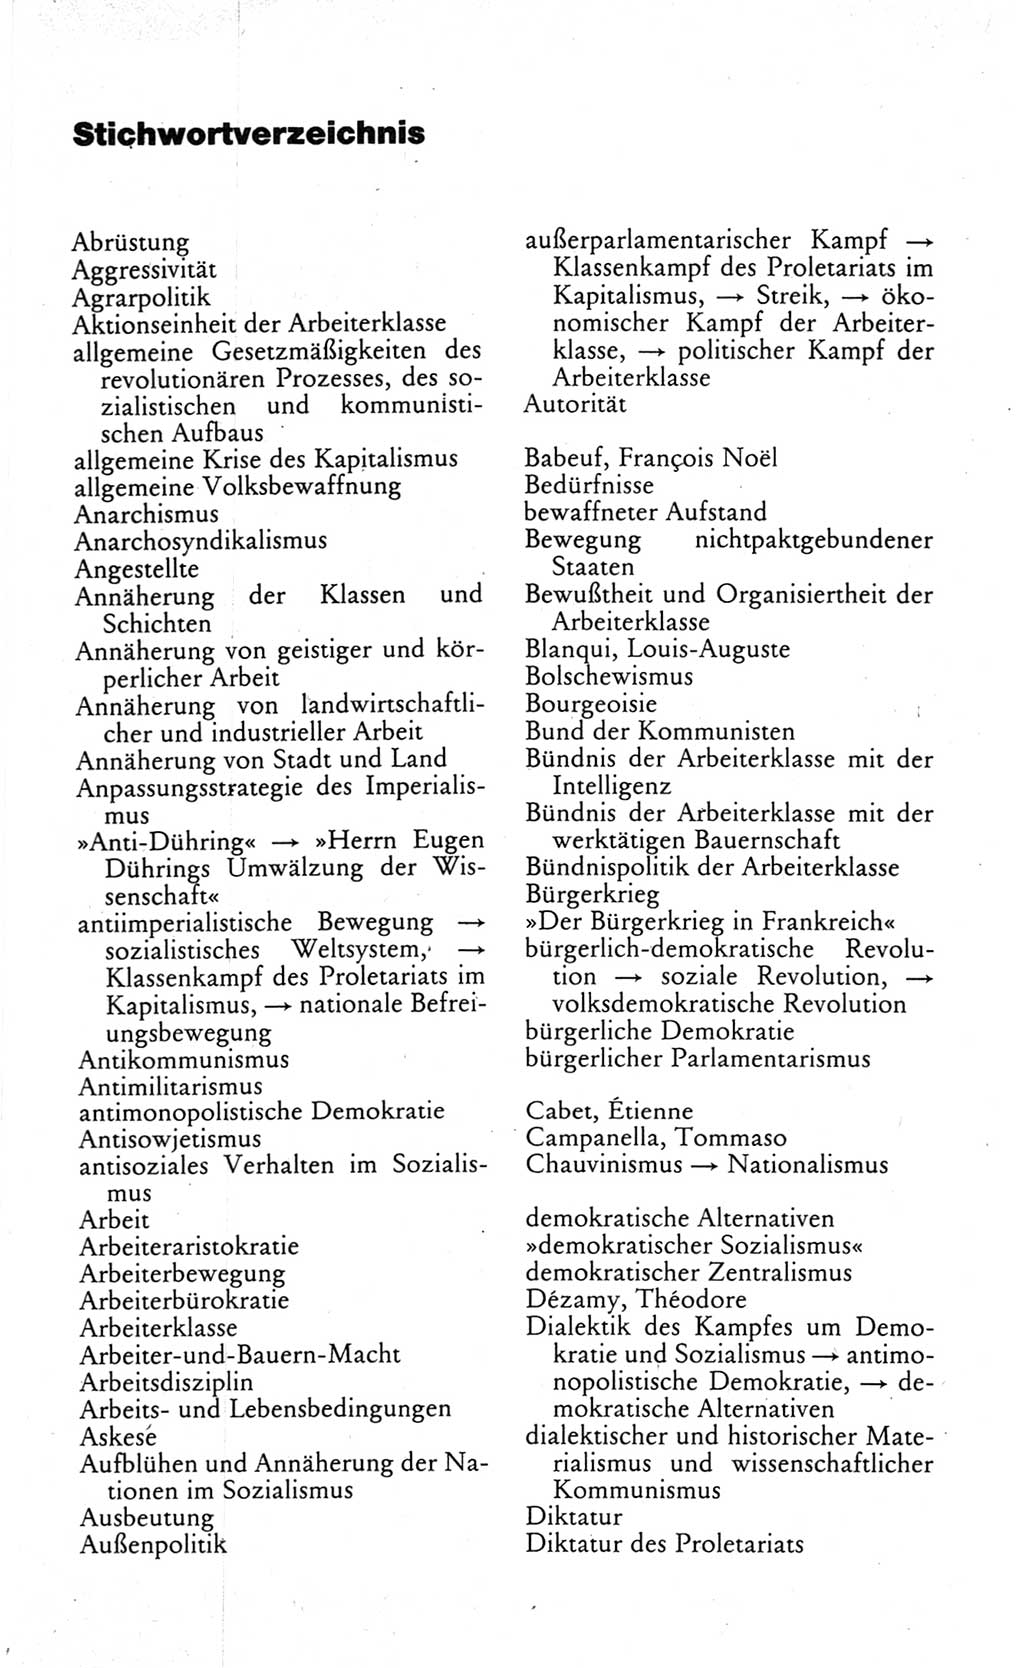 Wörterbuch des wissenschaftlichen Kommunismus [Deutsche Demokratische Republik (DDR)] 1984, Seite 423 (Wb. wiss. Komm. DDR 1984, S. 423)